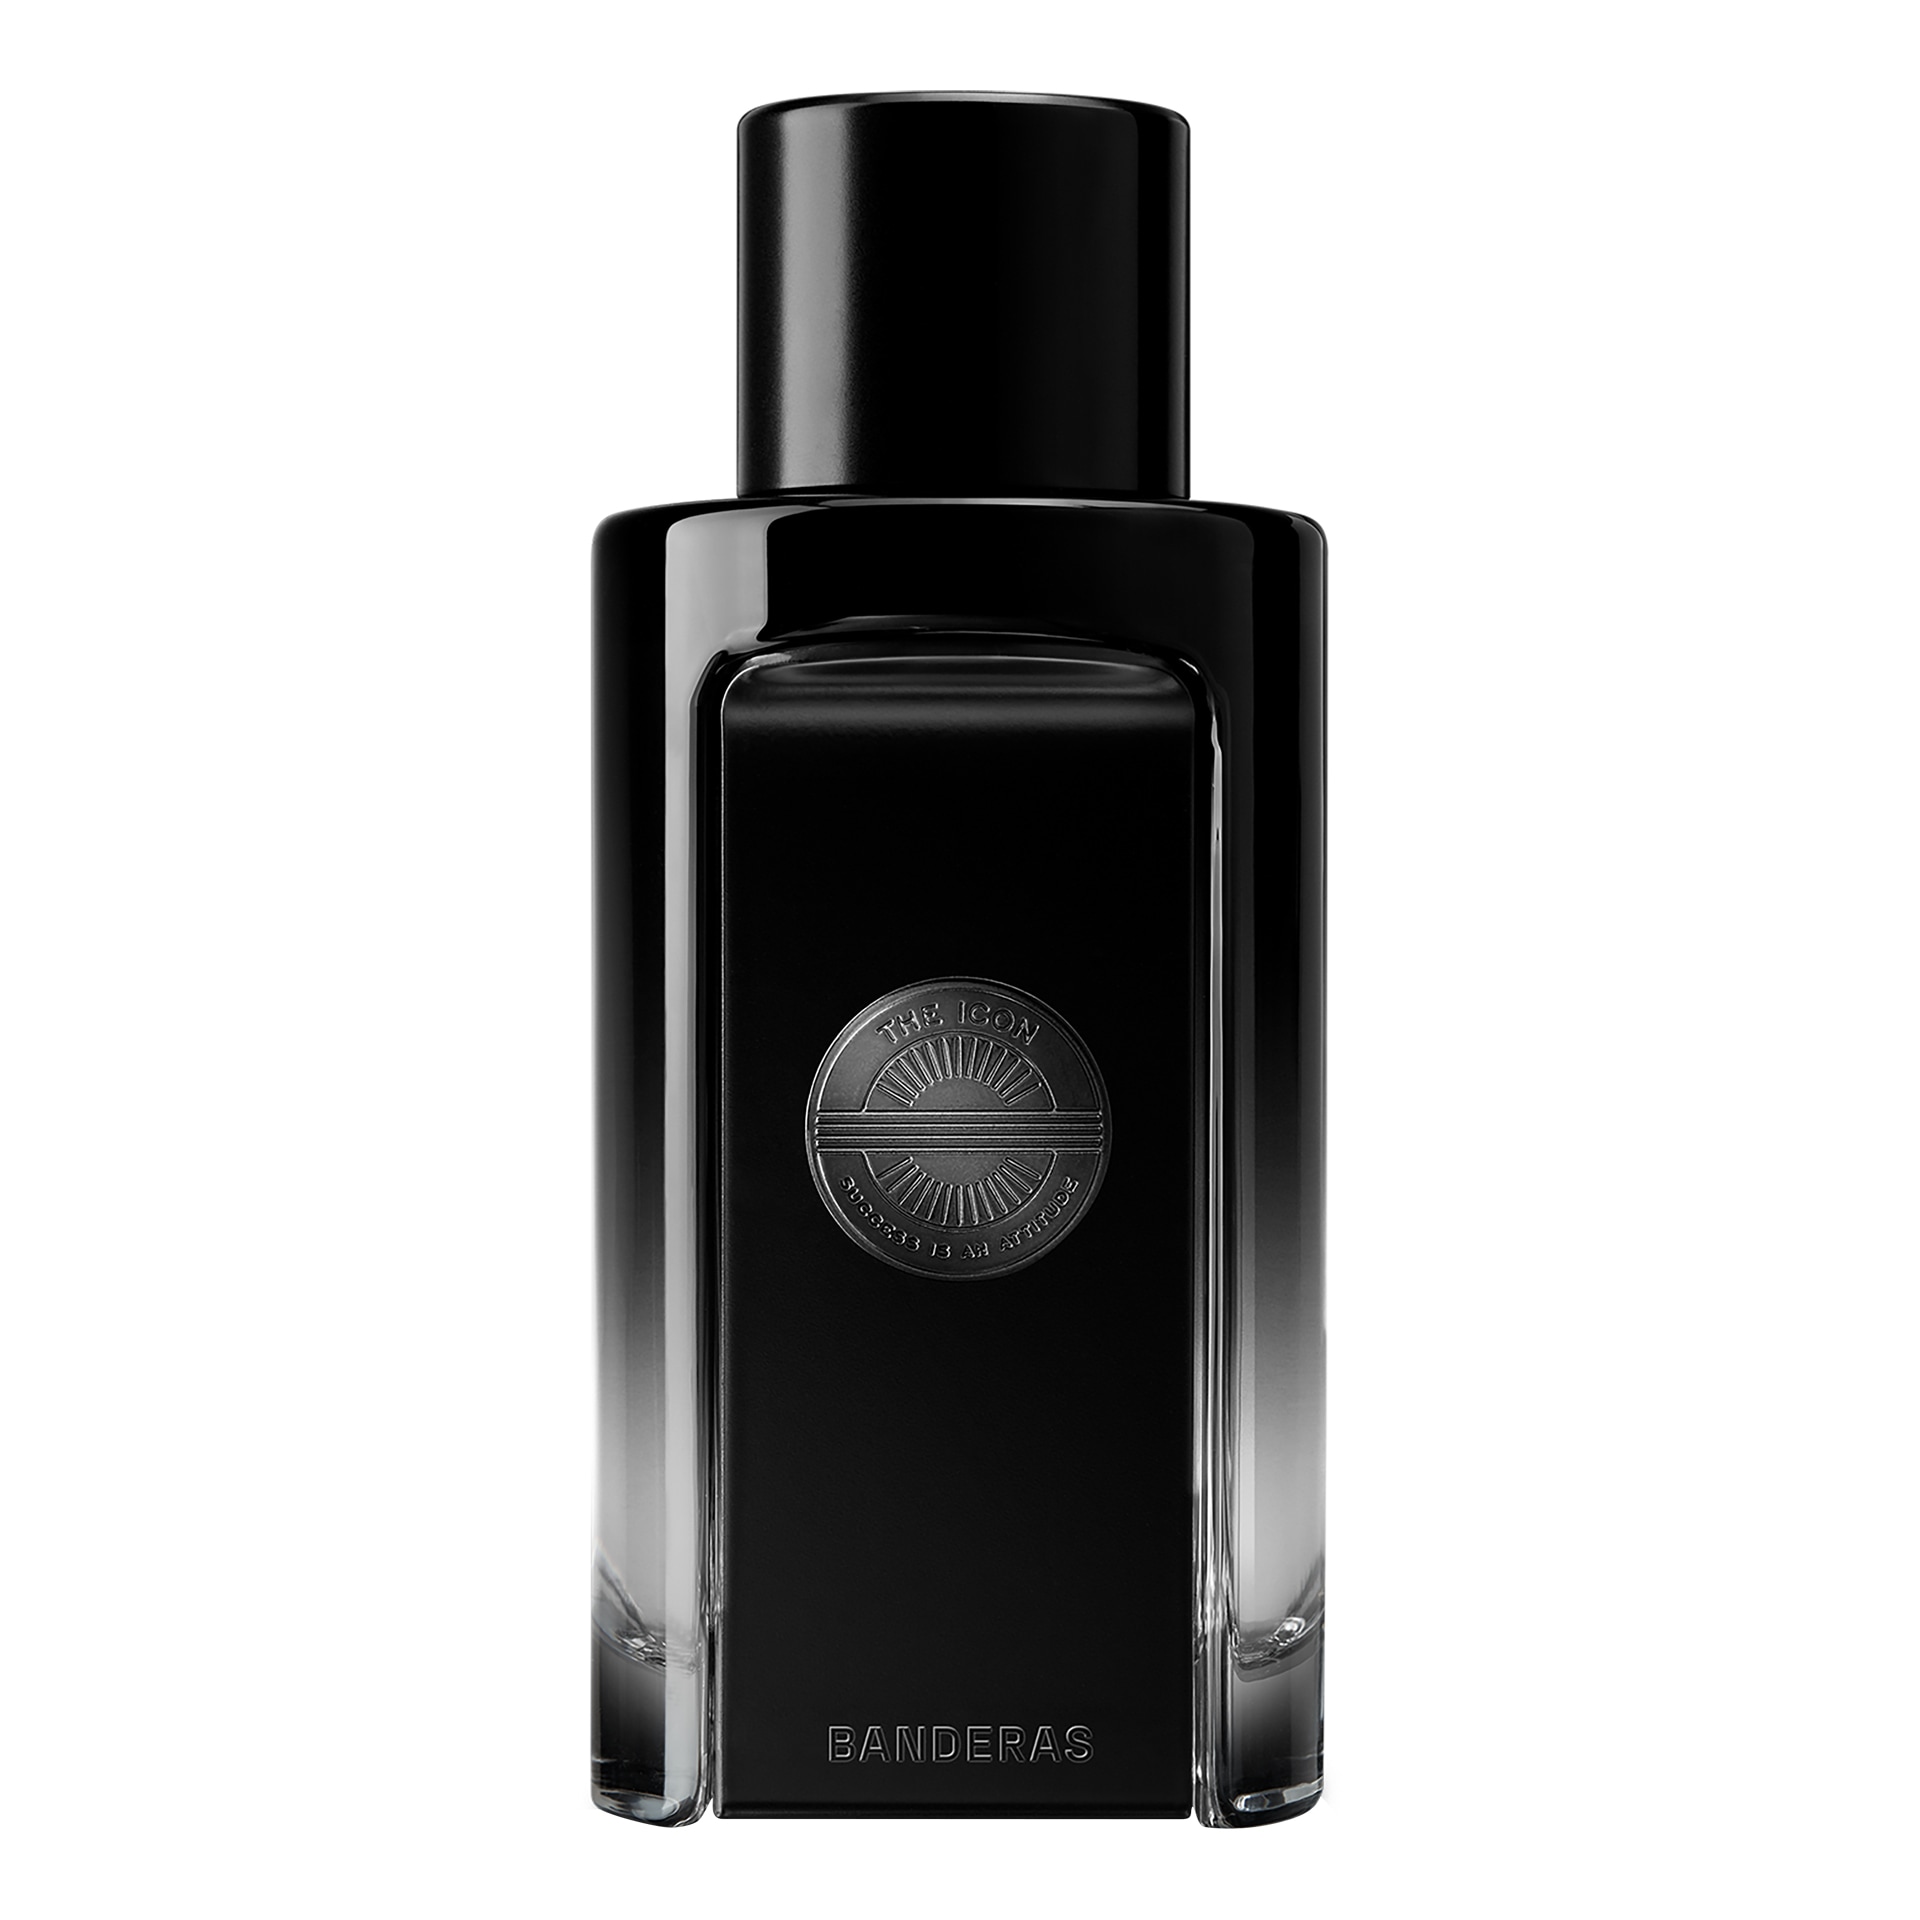 Вода парфюмерная Banderas The Icon Perfume, 100 мл на шелковом пути большое азиатское путешествие чтобы обрести себя